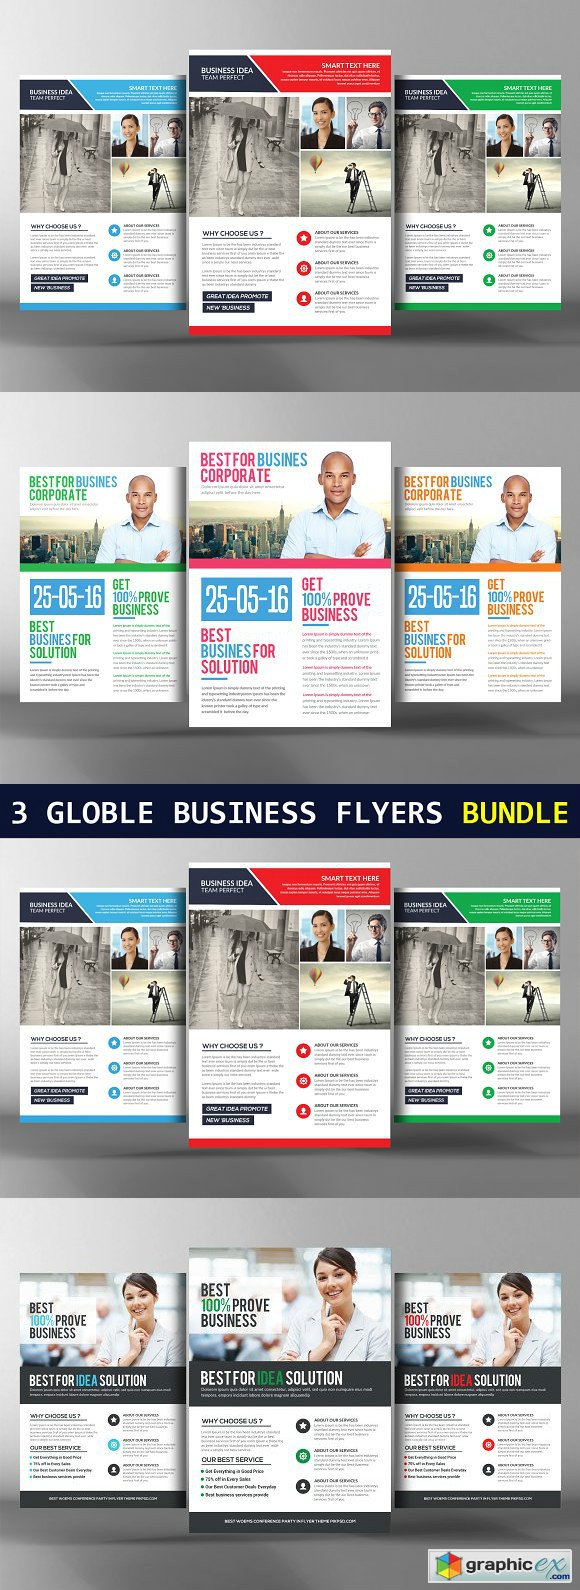 3 Global Business Flyers Bundle